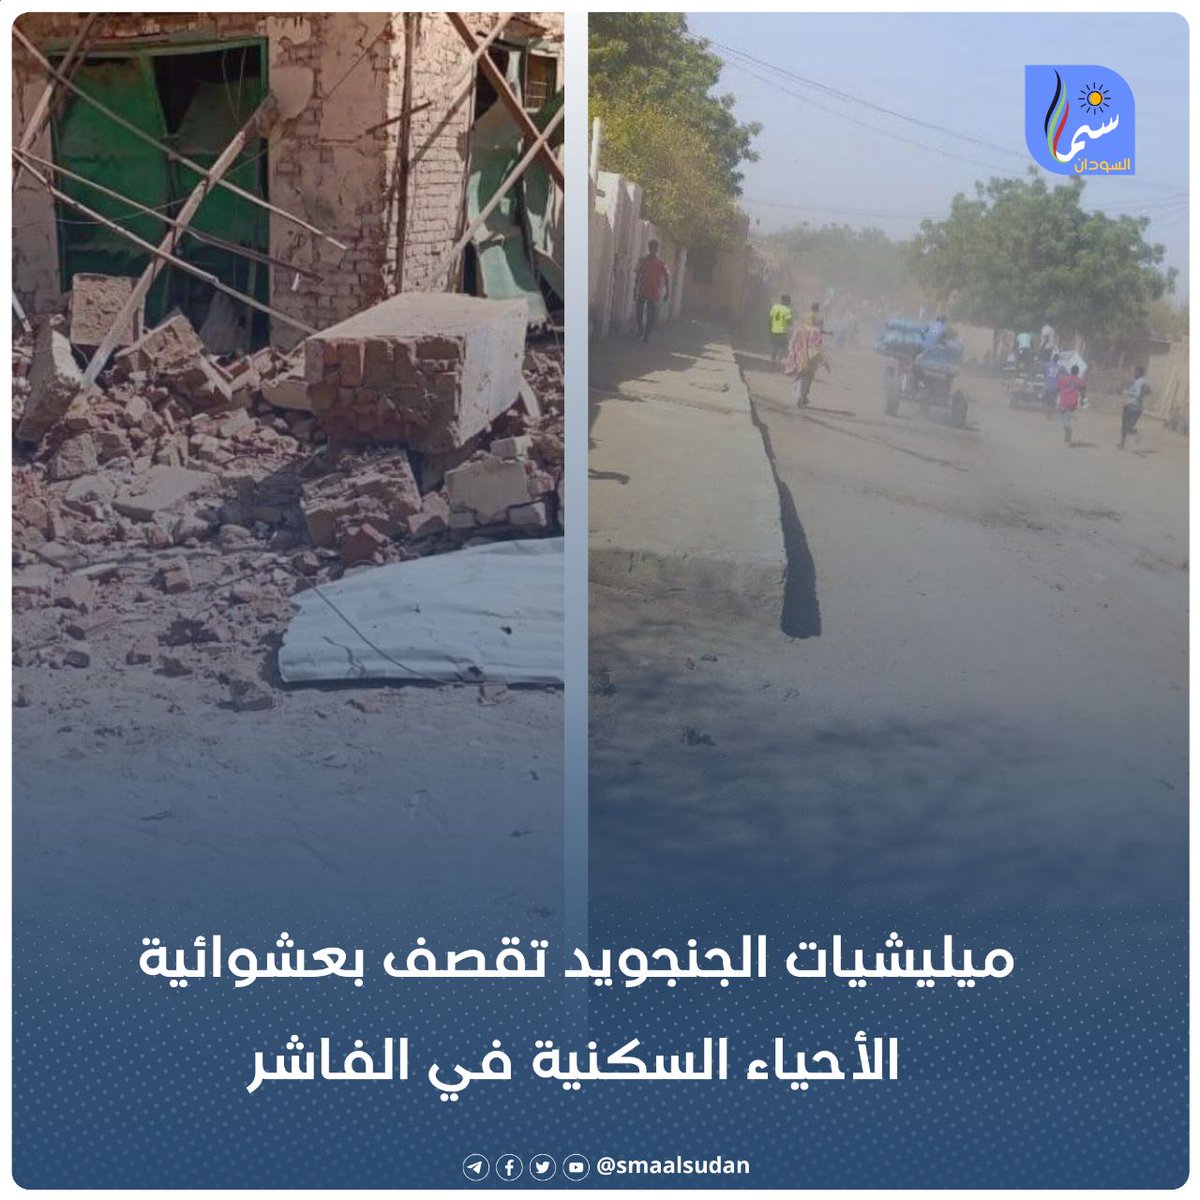 ميليشيات الجنجويد تقصف بعشوائية الأحياء السكنية في الفاشر و مدير الصحة بشمال دارفور يعلن خروج مستشفيات الفاشر عن الخدمة جراء القصف. #سما_السودان